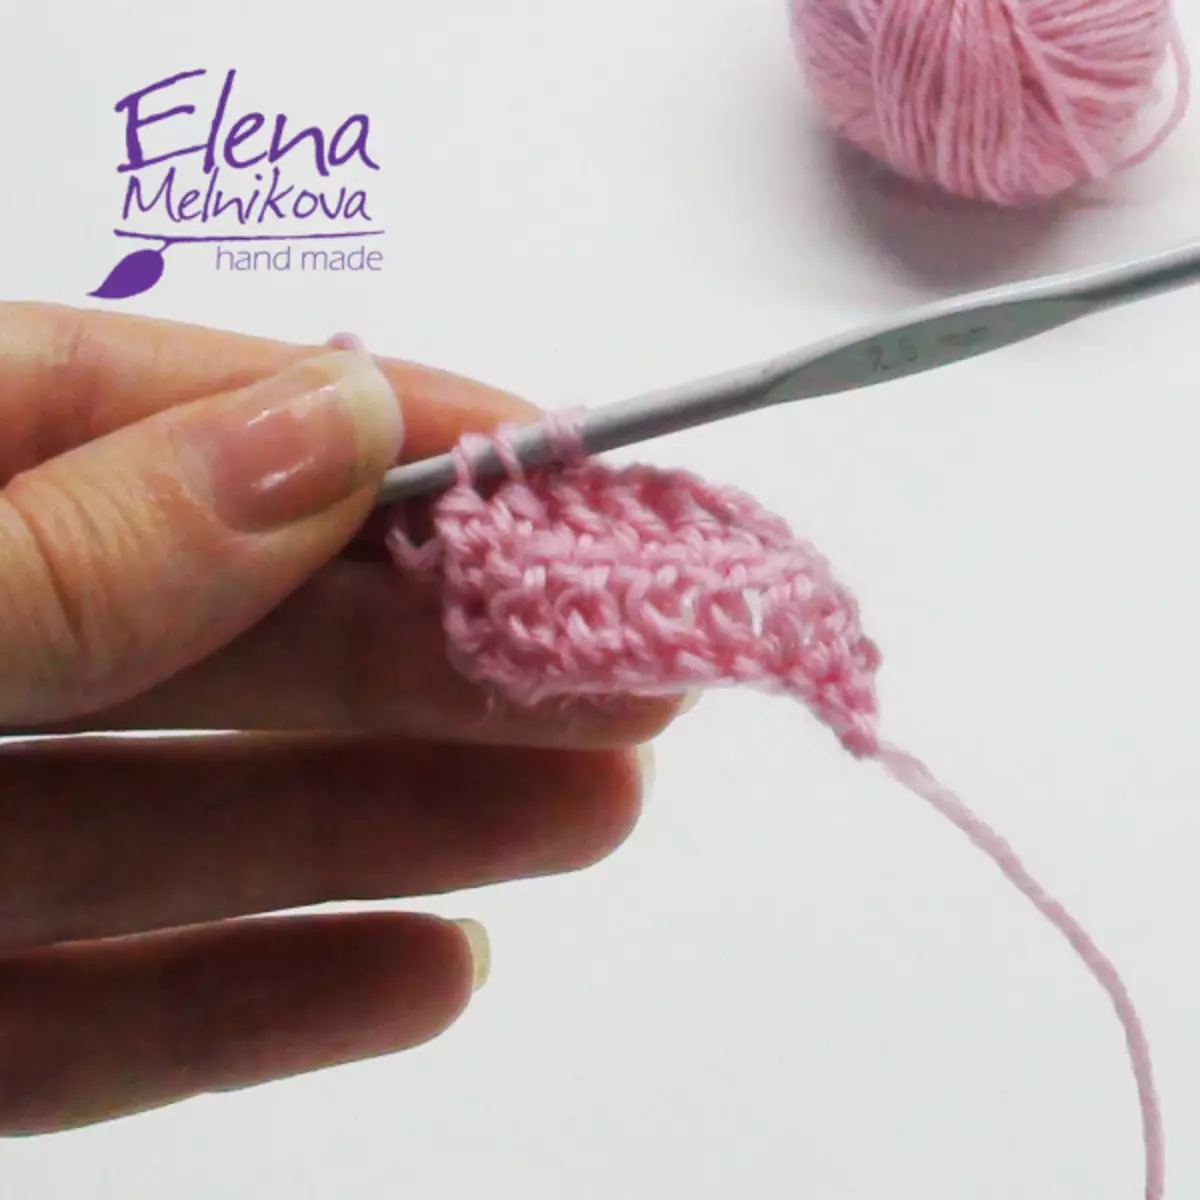 Köttur eyru: Workshop á Crochet með kerfum